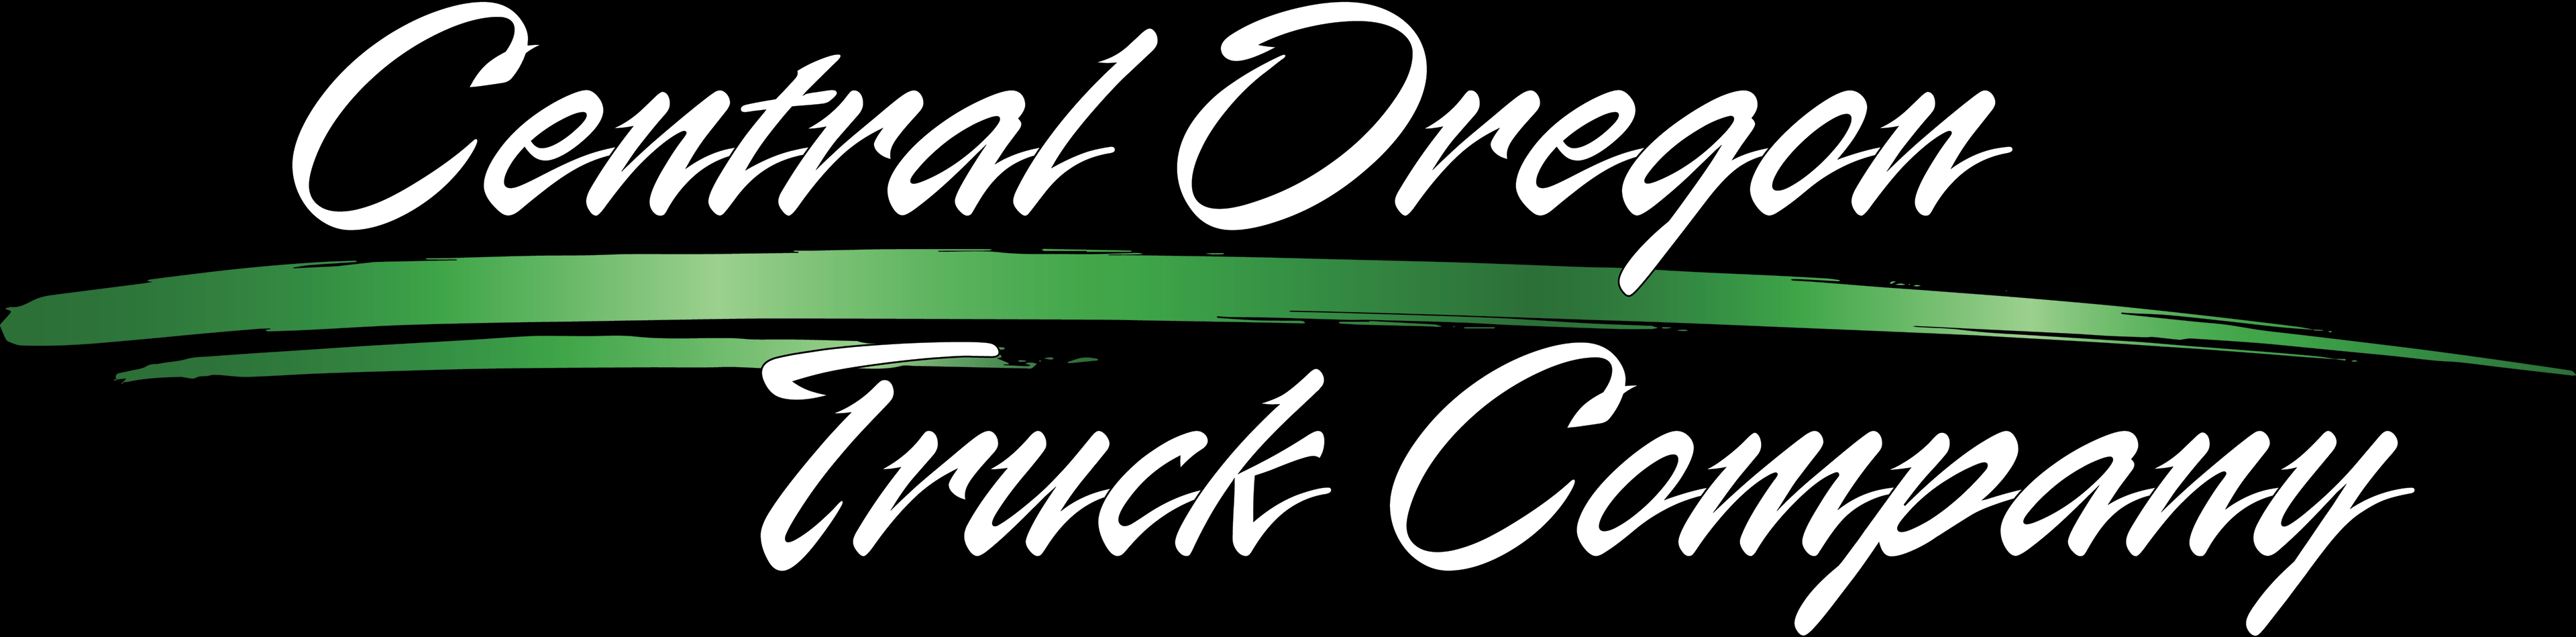 Central Oregon Truck Company logo